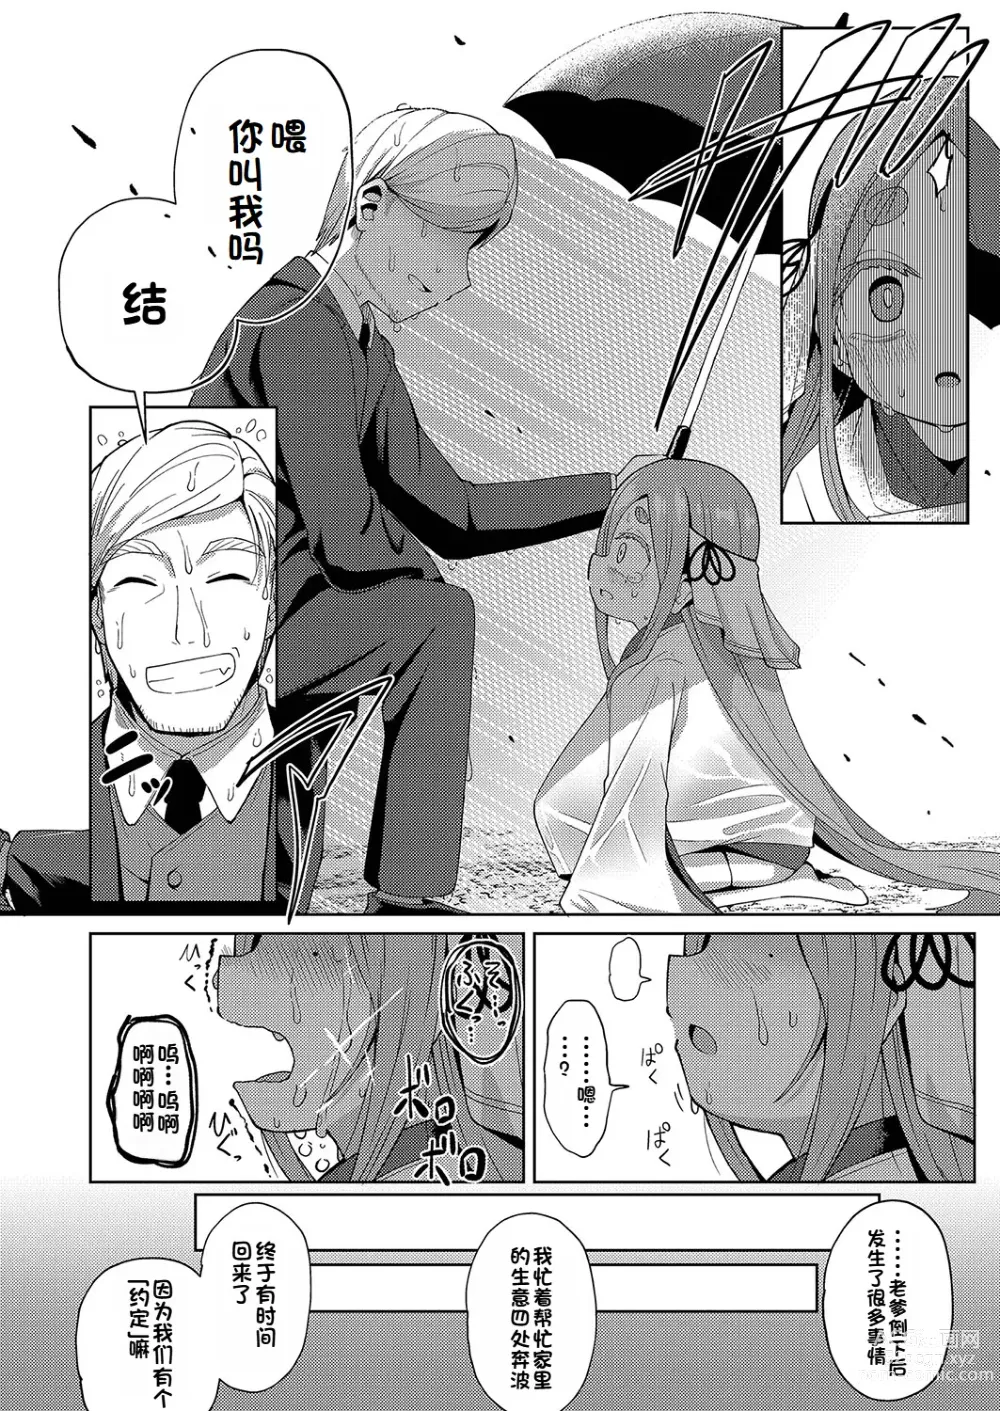 Page 8 of manga Yui